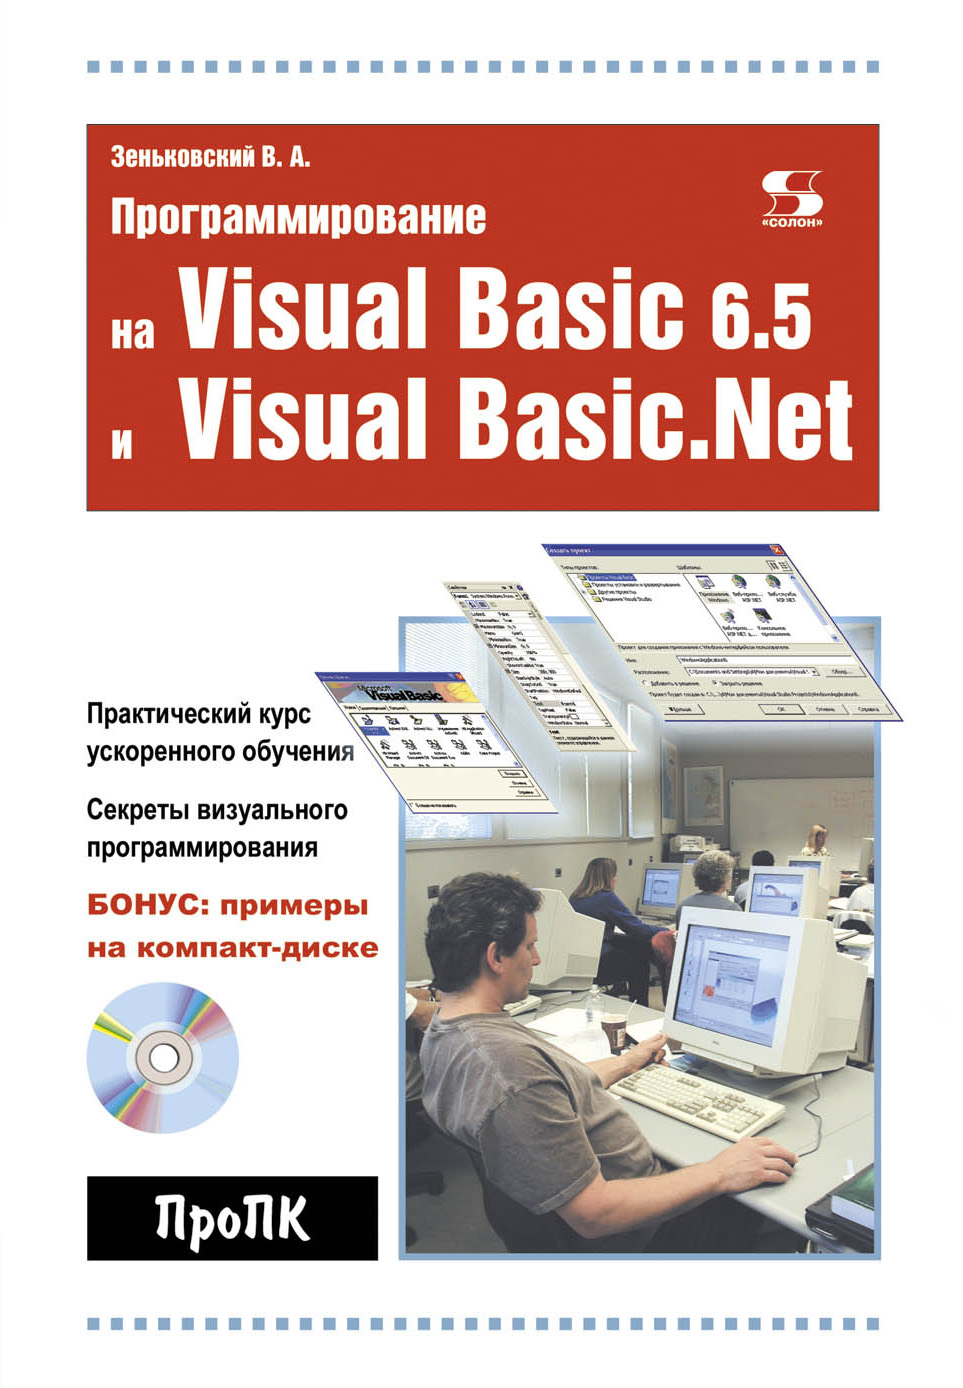 Книга Про ПК Программирование на Visual Basic 6.5 и Visual Basic.Net созданная В. А. Зеньковский может относится к жанру программирование. Стоимость электронной книги Программирование на Visual Basic 6.5 и Visual Basic.Net с идентификатором 8337606 составляет 300.00 руб.